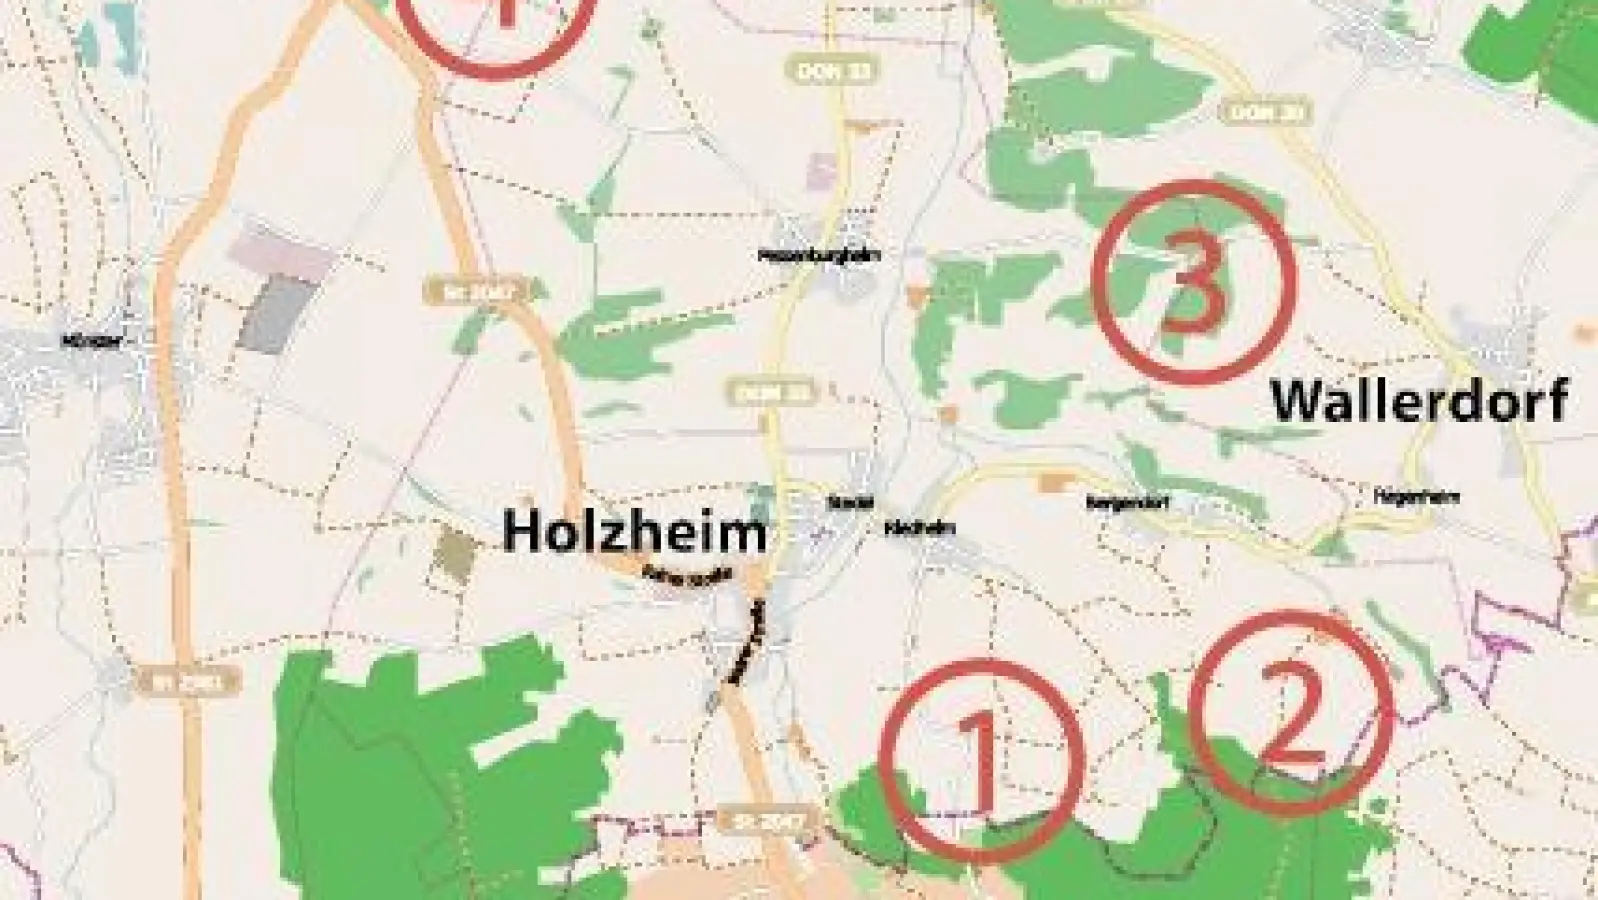 &lt;p&gt;  &lt;x_bildunterschr&gt;  &lt;b&gt;Einer der Standorte, &lt;/b&gt; die die Gemeinde Holzheim im Flächennutzungsplan für Windkraft ins Auge gefasst hat, liegt 950 Meter von der Baarer Wertstoffsammelstelle entfernt. Die Standorte eins und zwei lehnte der Gemeinderat in der angeforderten Stellungnahme ab.  &lt;tab/&gt;Grafik: Kruck/Open Street View &lt;/x_bildunterschr&gt;  &lt;/p&gt;